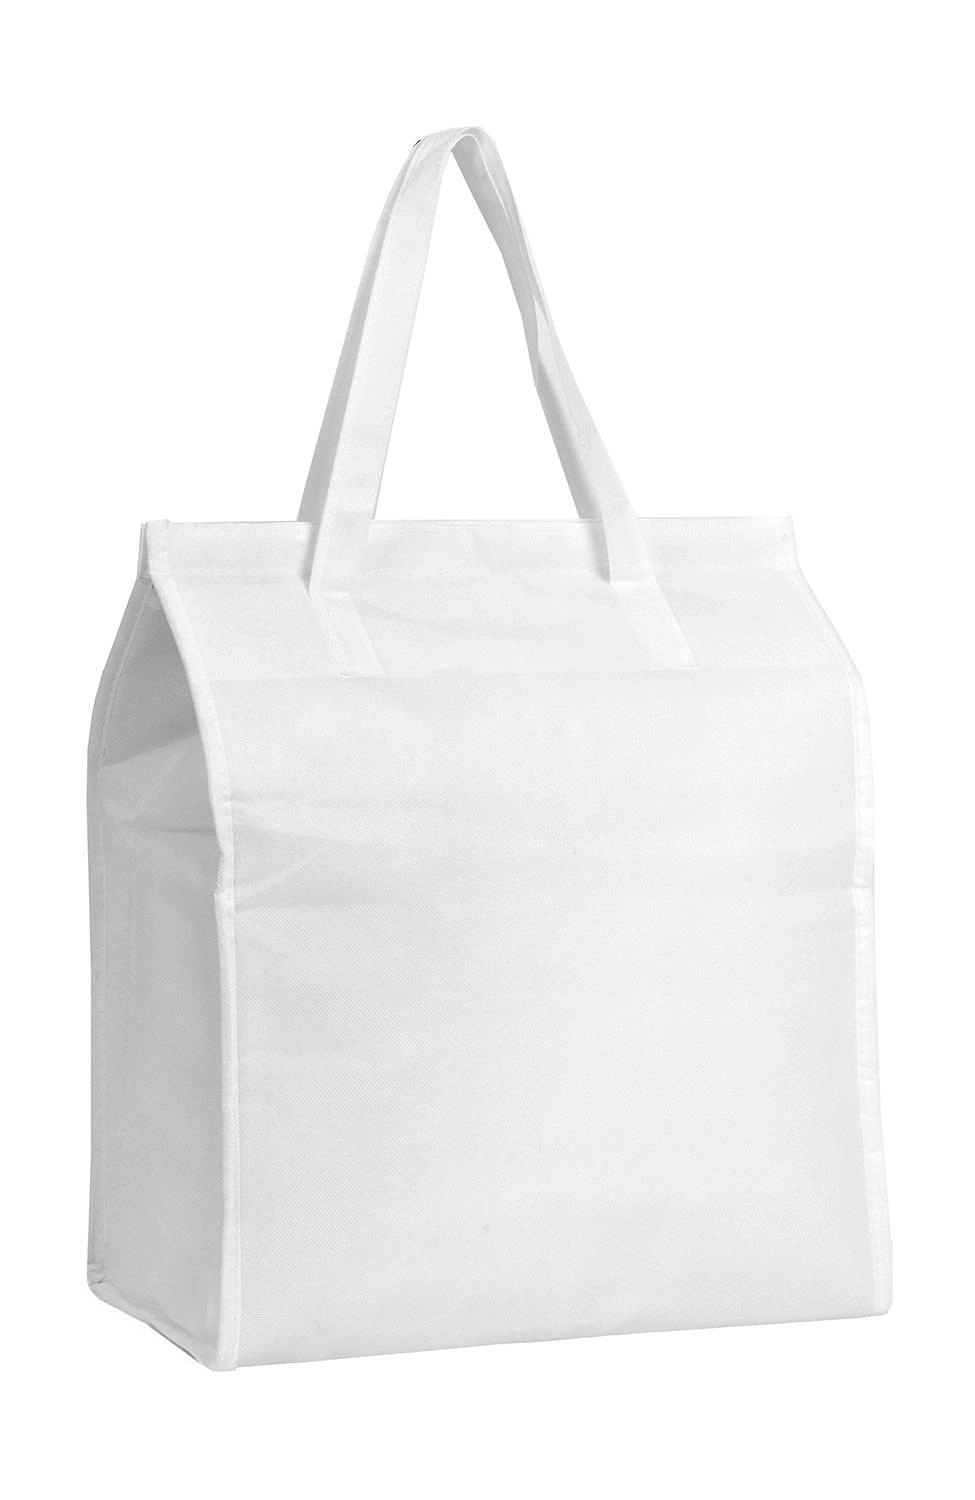 Kolding Cooler Bag zum Besticken und Bedrucken in der Farbe White mit Ihren Logo, Schriftzug oder Motiv.